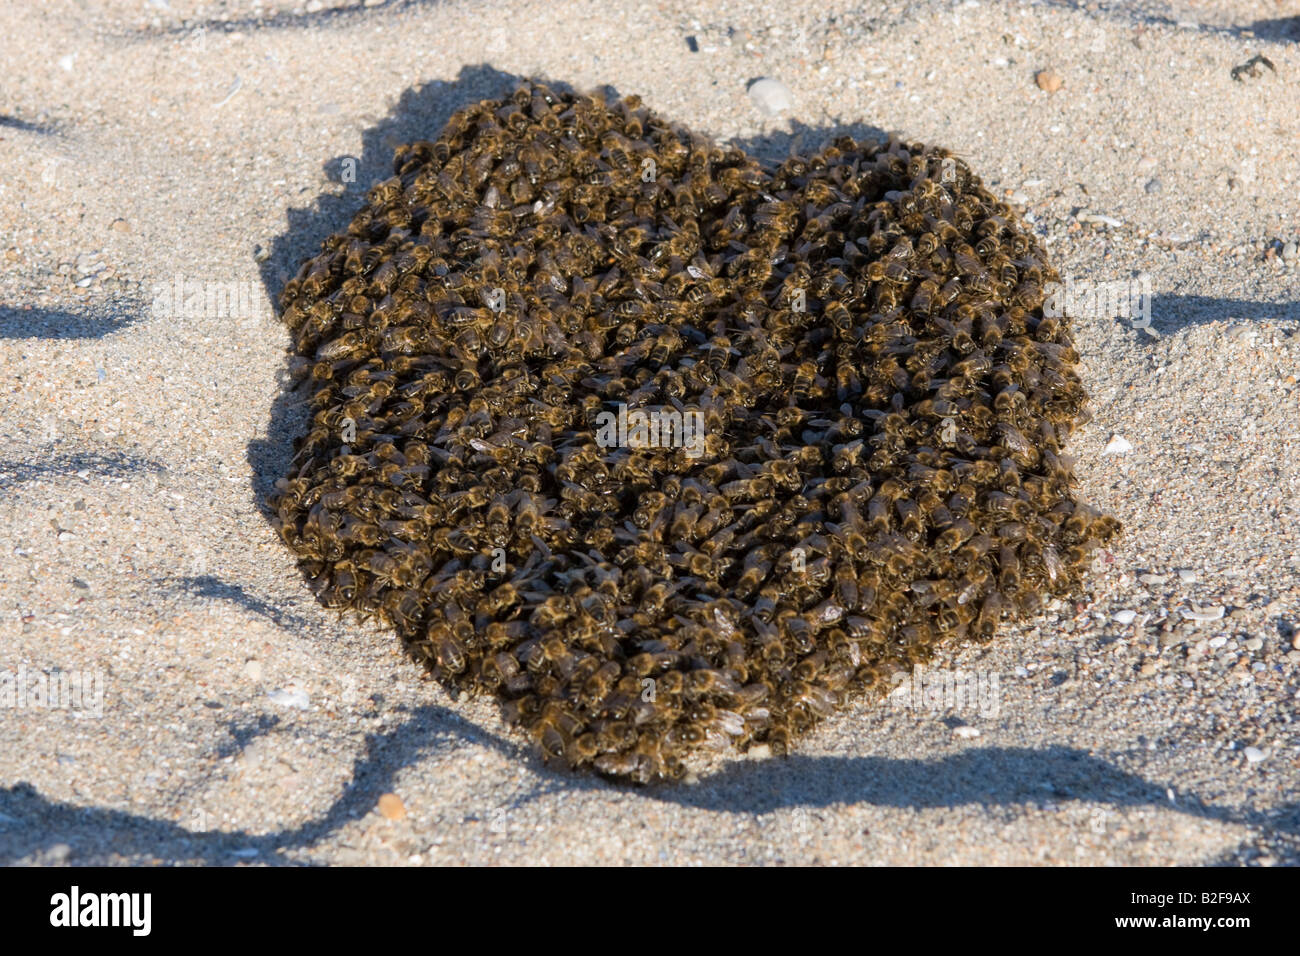 L'essaimage des abeilles sur une plage, Bretagne, France, Europe Banque D'Images